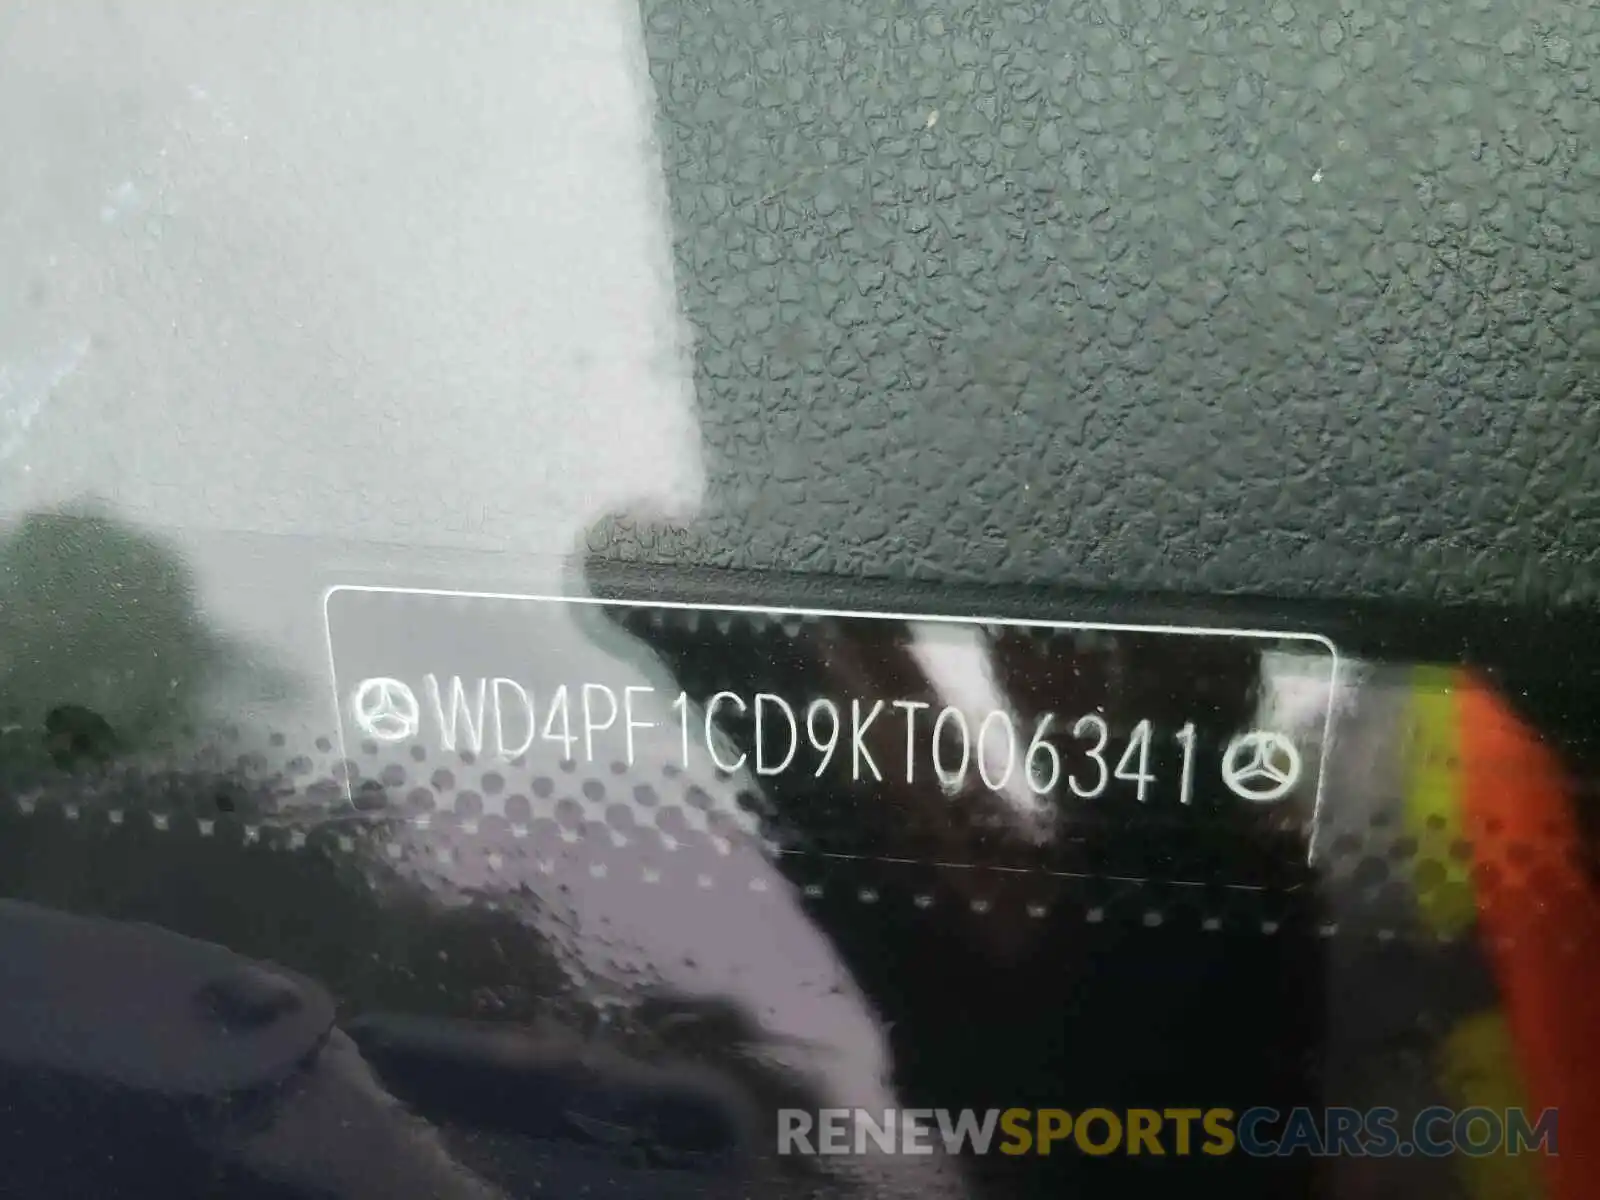 10 Photograph of a damaged car WD4PF1CD9KT006341 MERCEDES-BENZ SPRINTER 2019